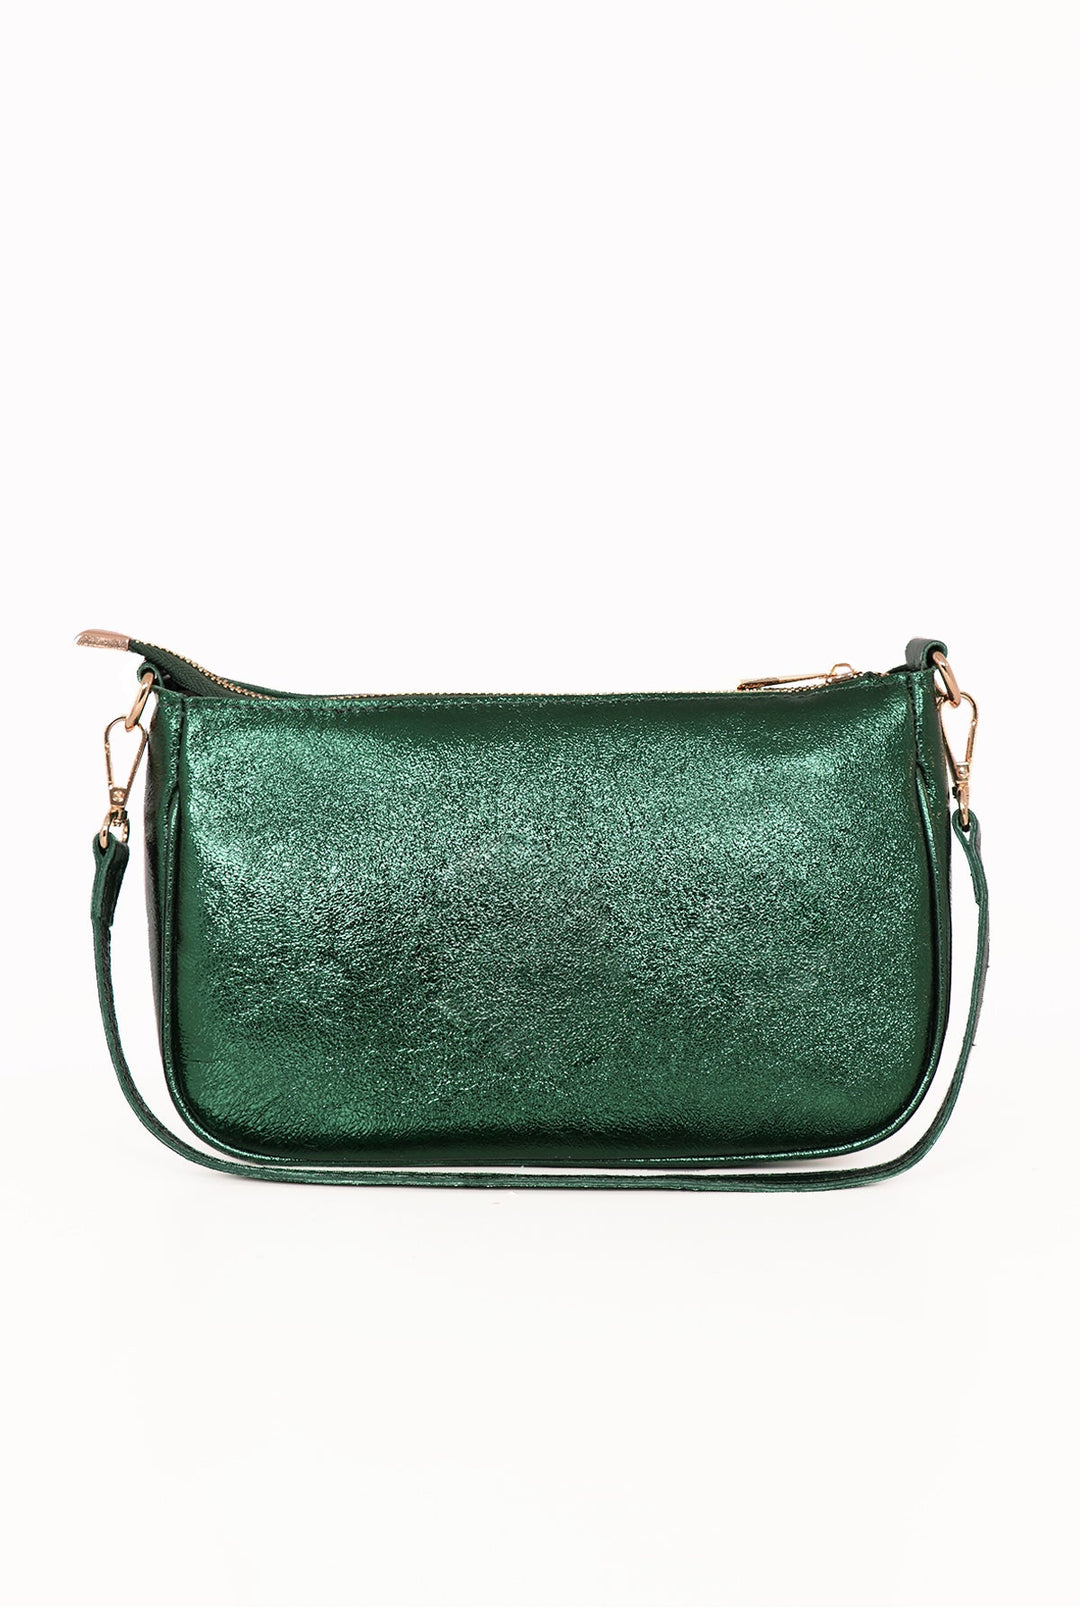 Metal Green Italian Leather Baguette Bag